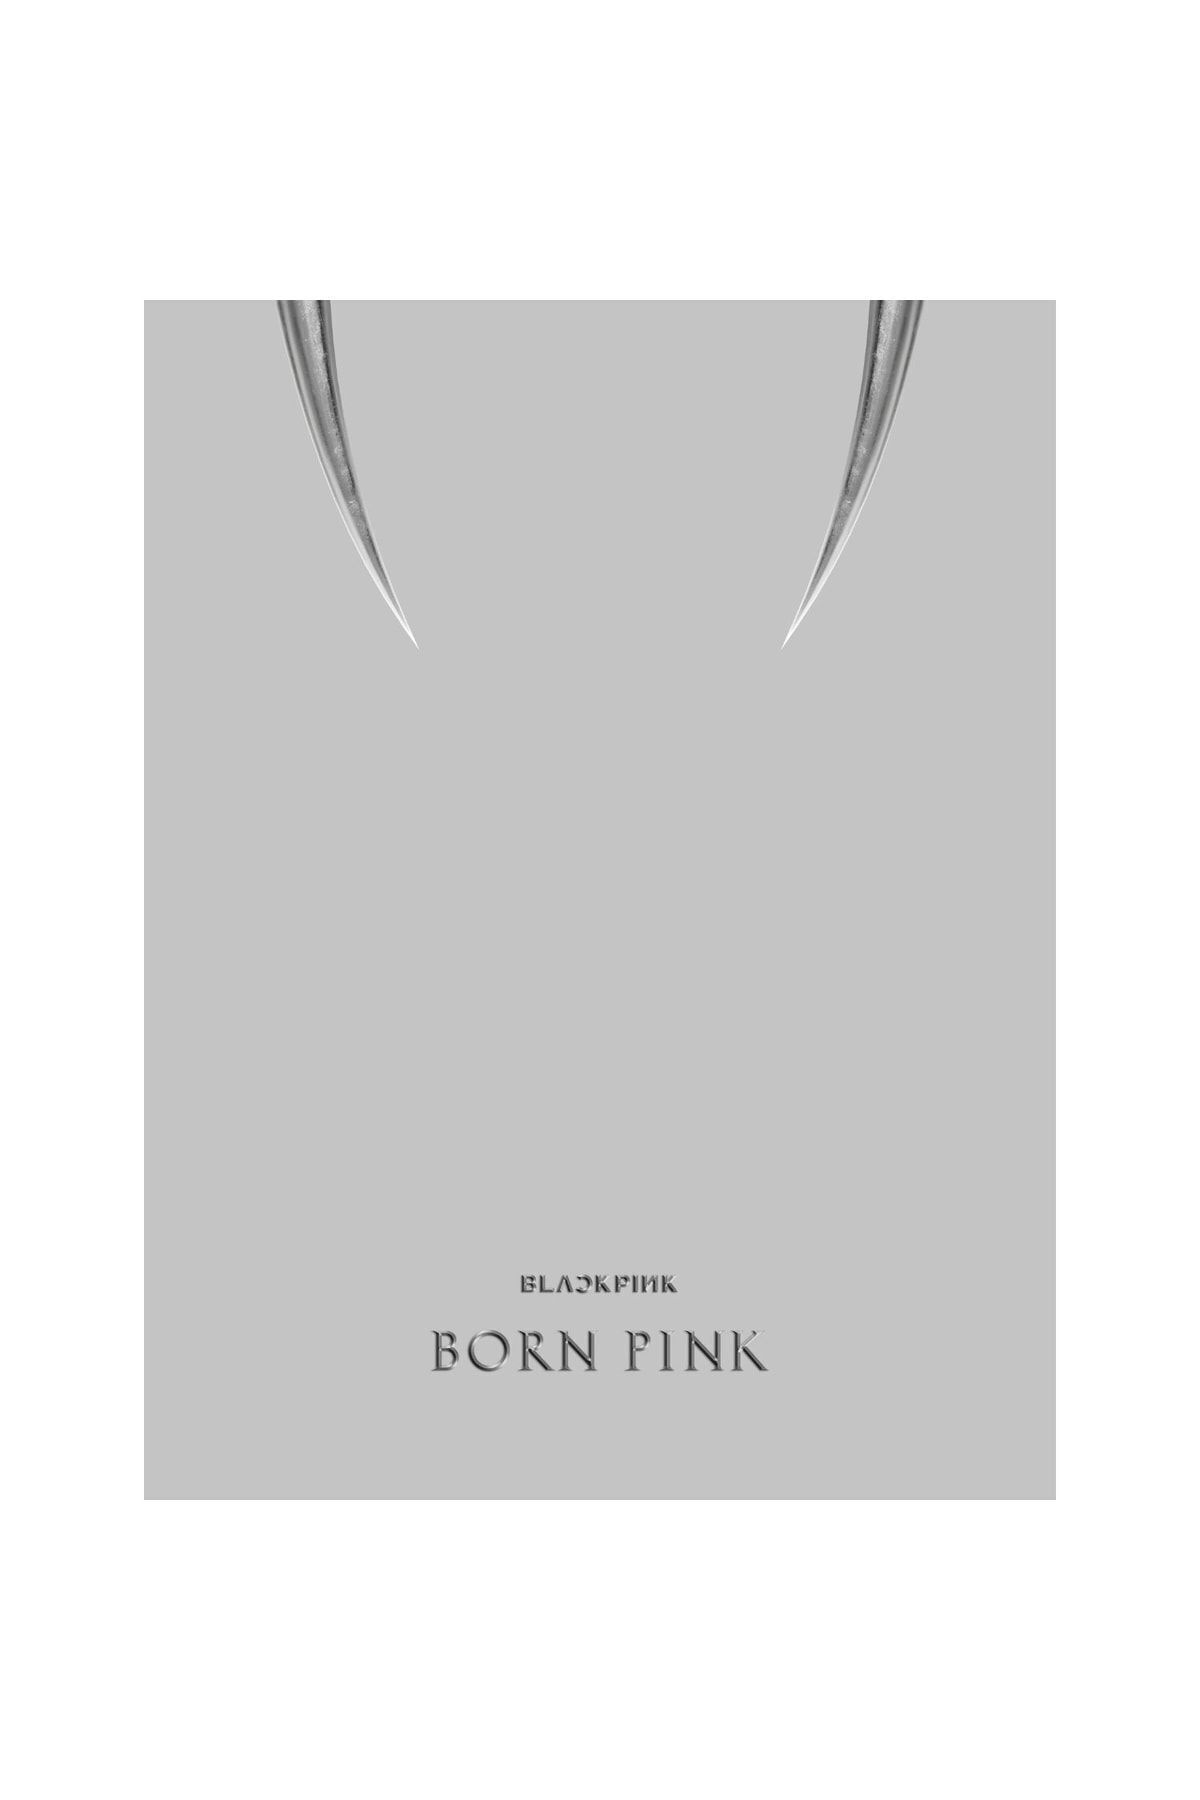 koreurunleri Blackpınk - 2nd Album [born Pınk]